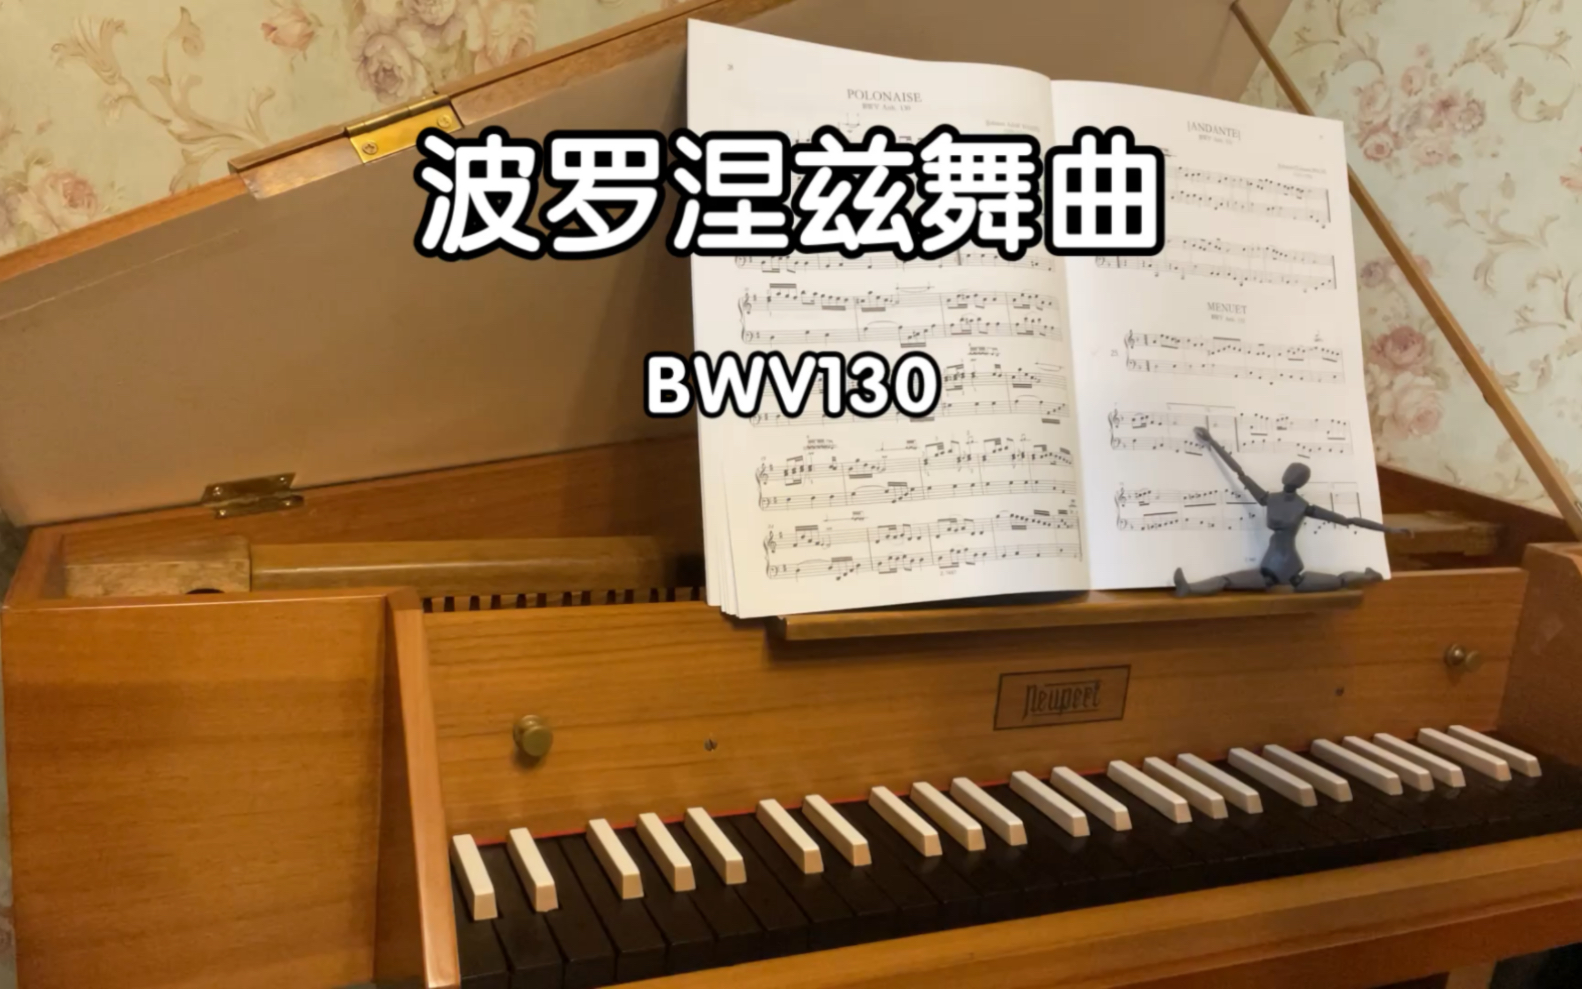 [图]波罗涅兹舞曲 BWV130